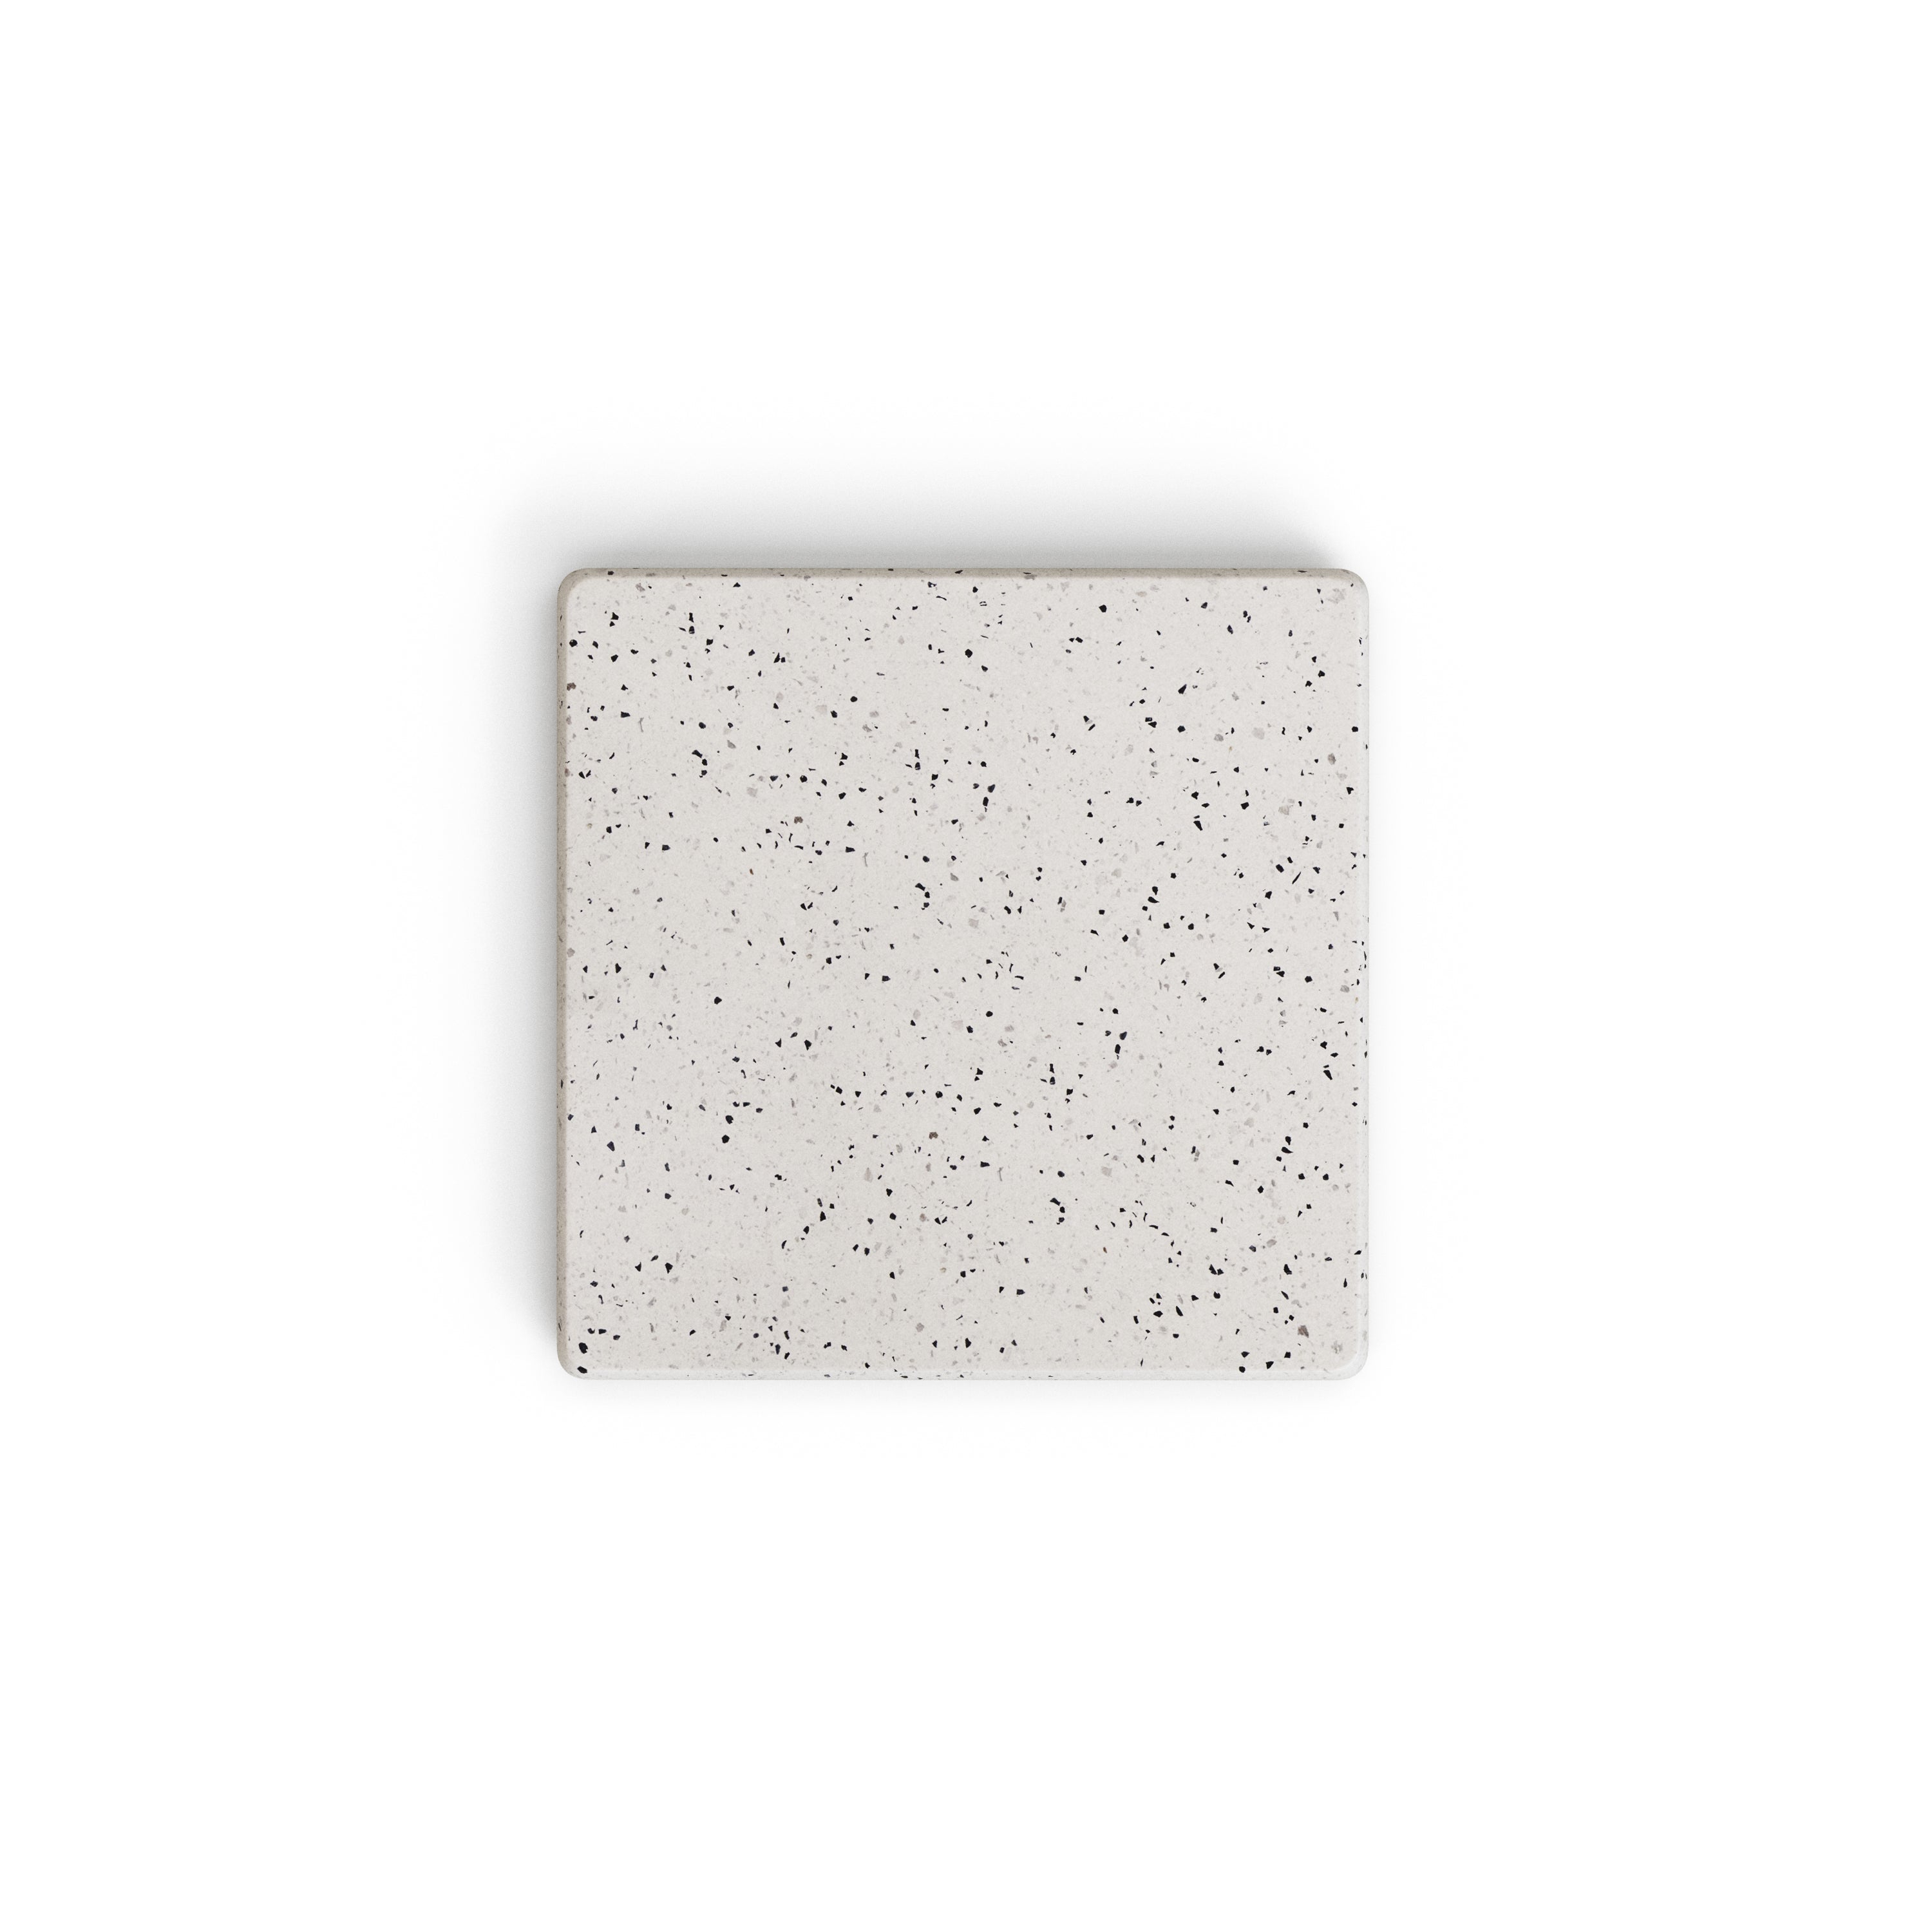 Saura négyzet alakú kültéri asztallap fehér terrazzóban 48 x 48 cm